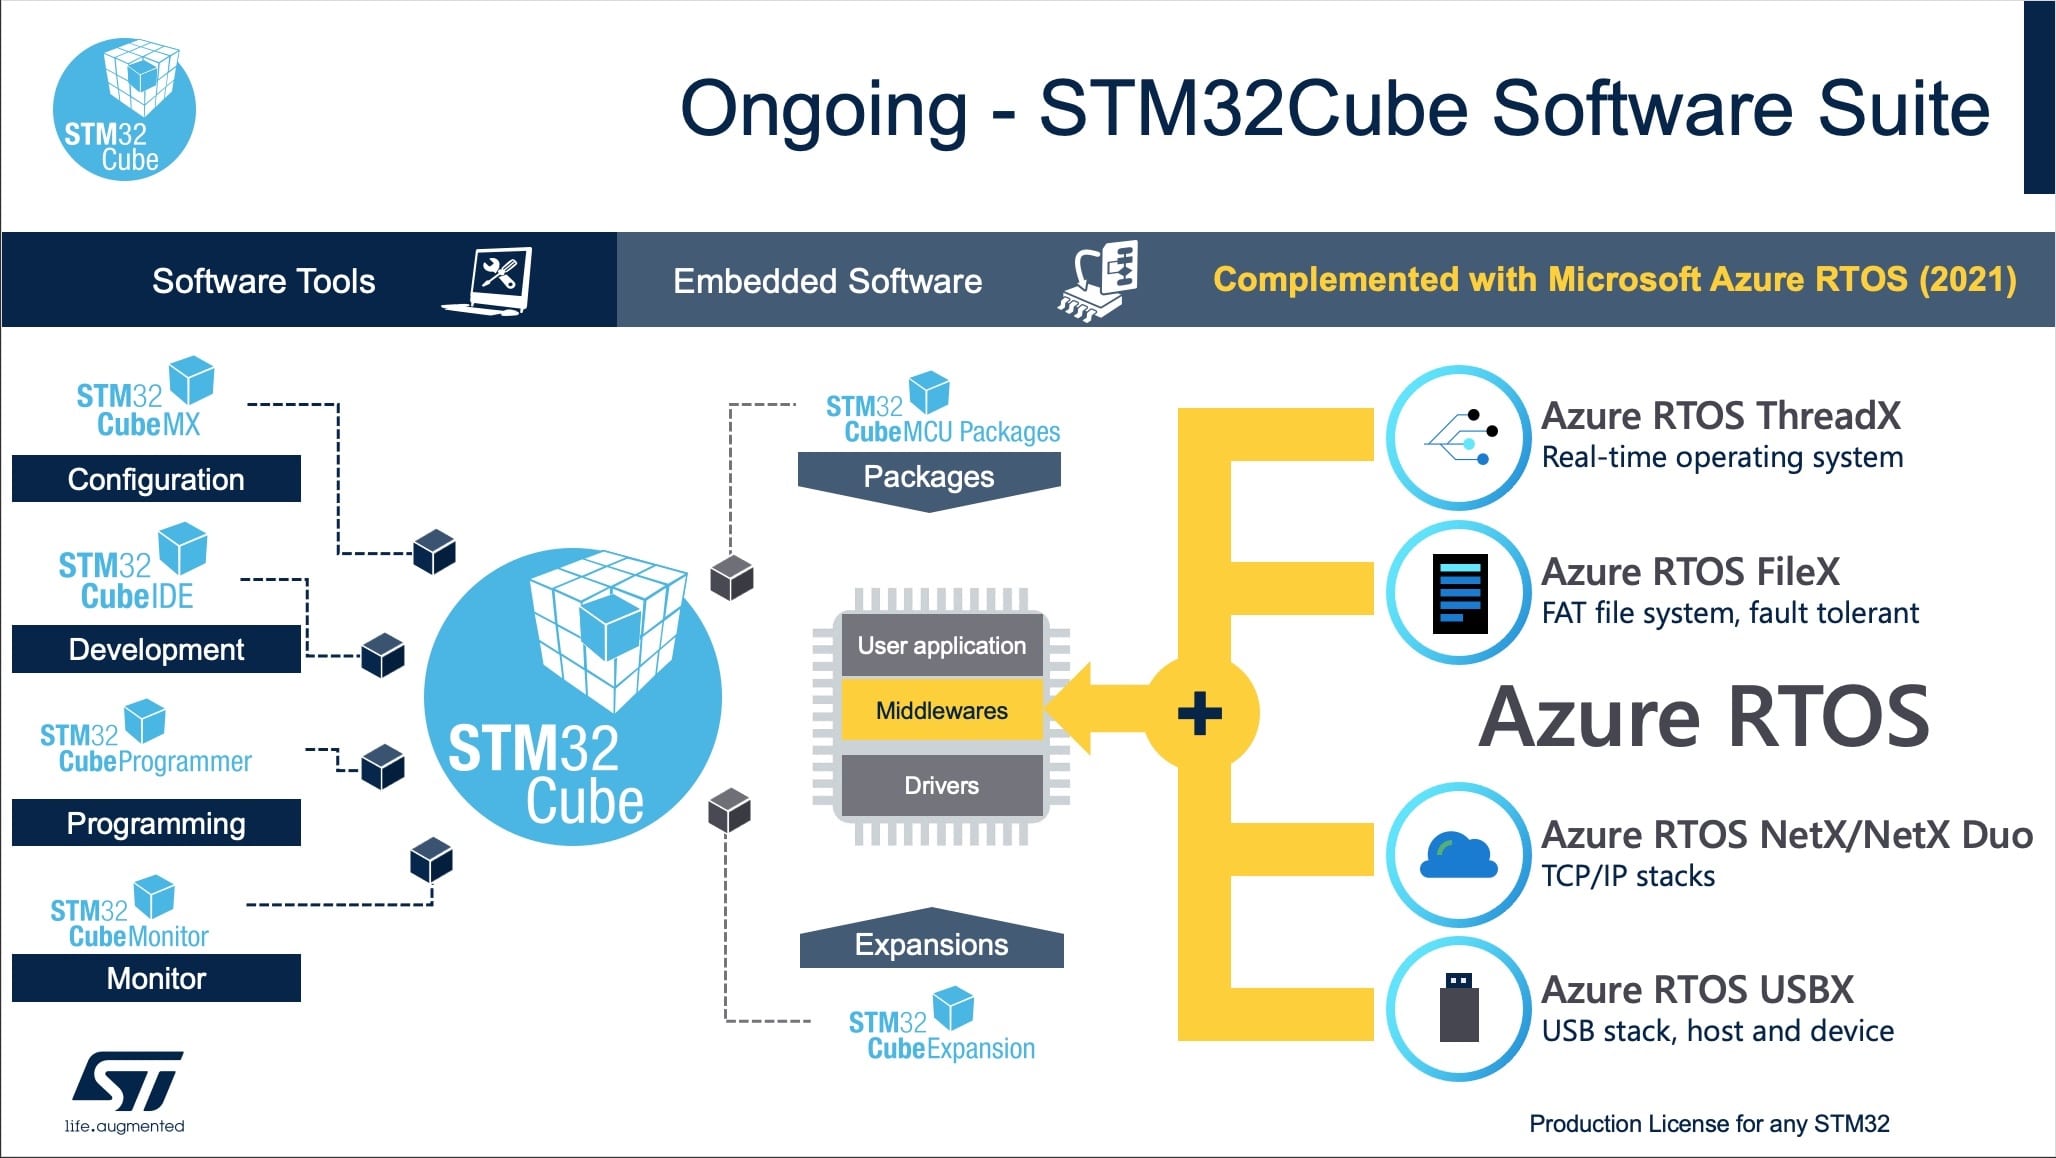 X-CUBE-AZRTOS: STM32Cube and Azure RTOS